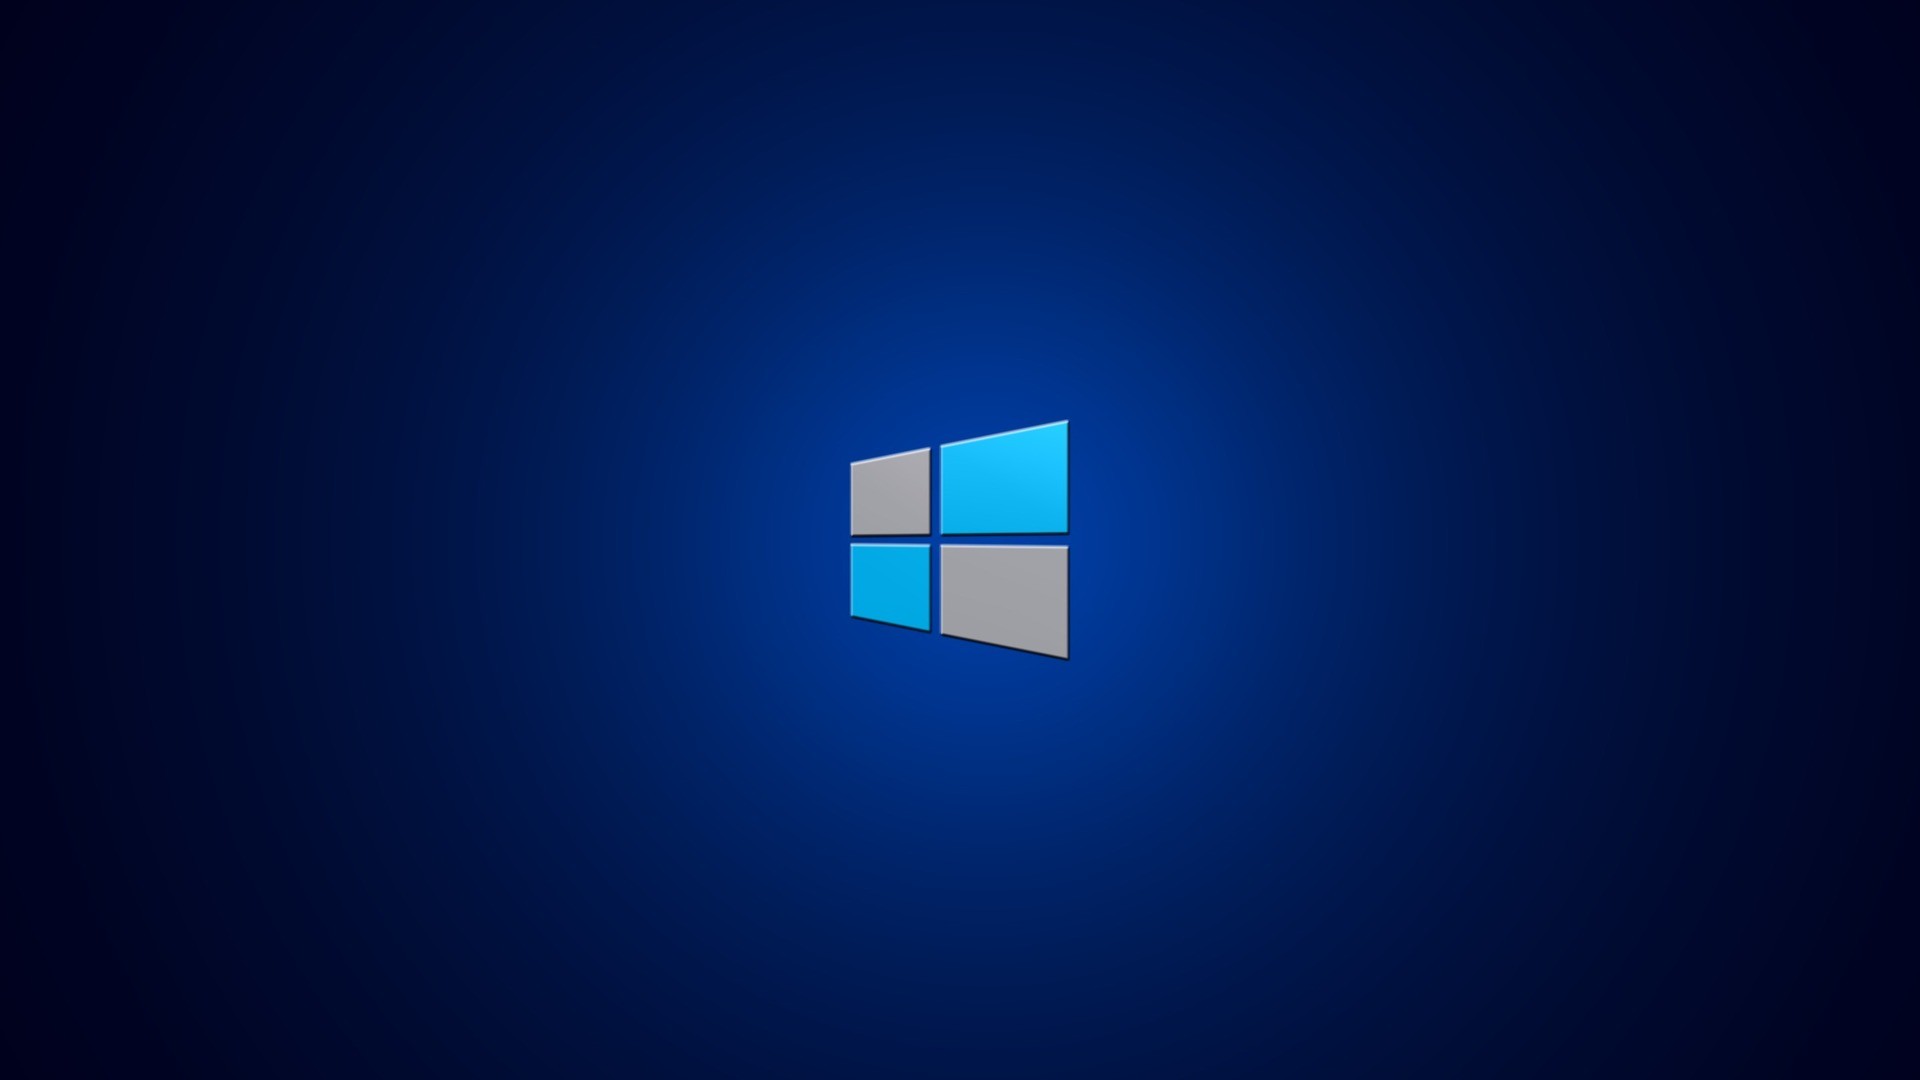 Download Gambar Wallpaper Hd Pc Windows 7 terbaru 2020